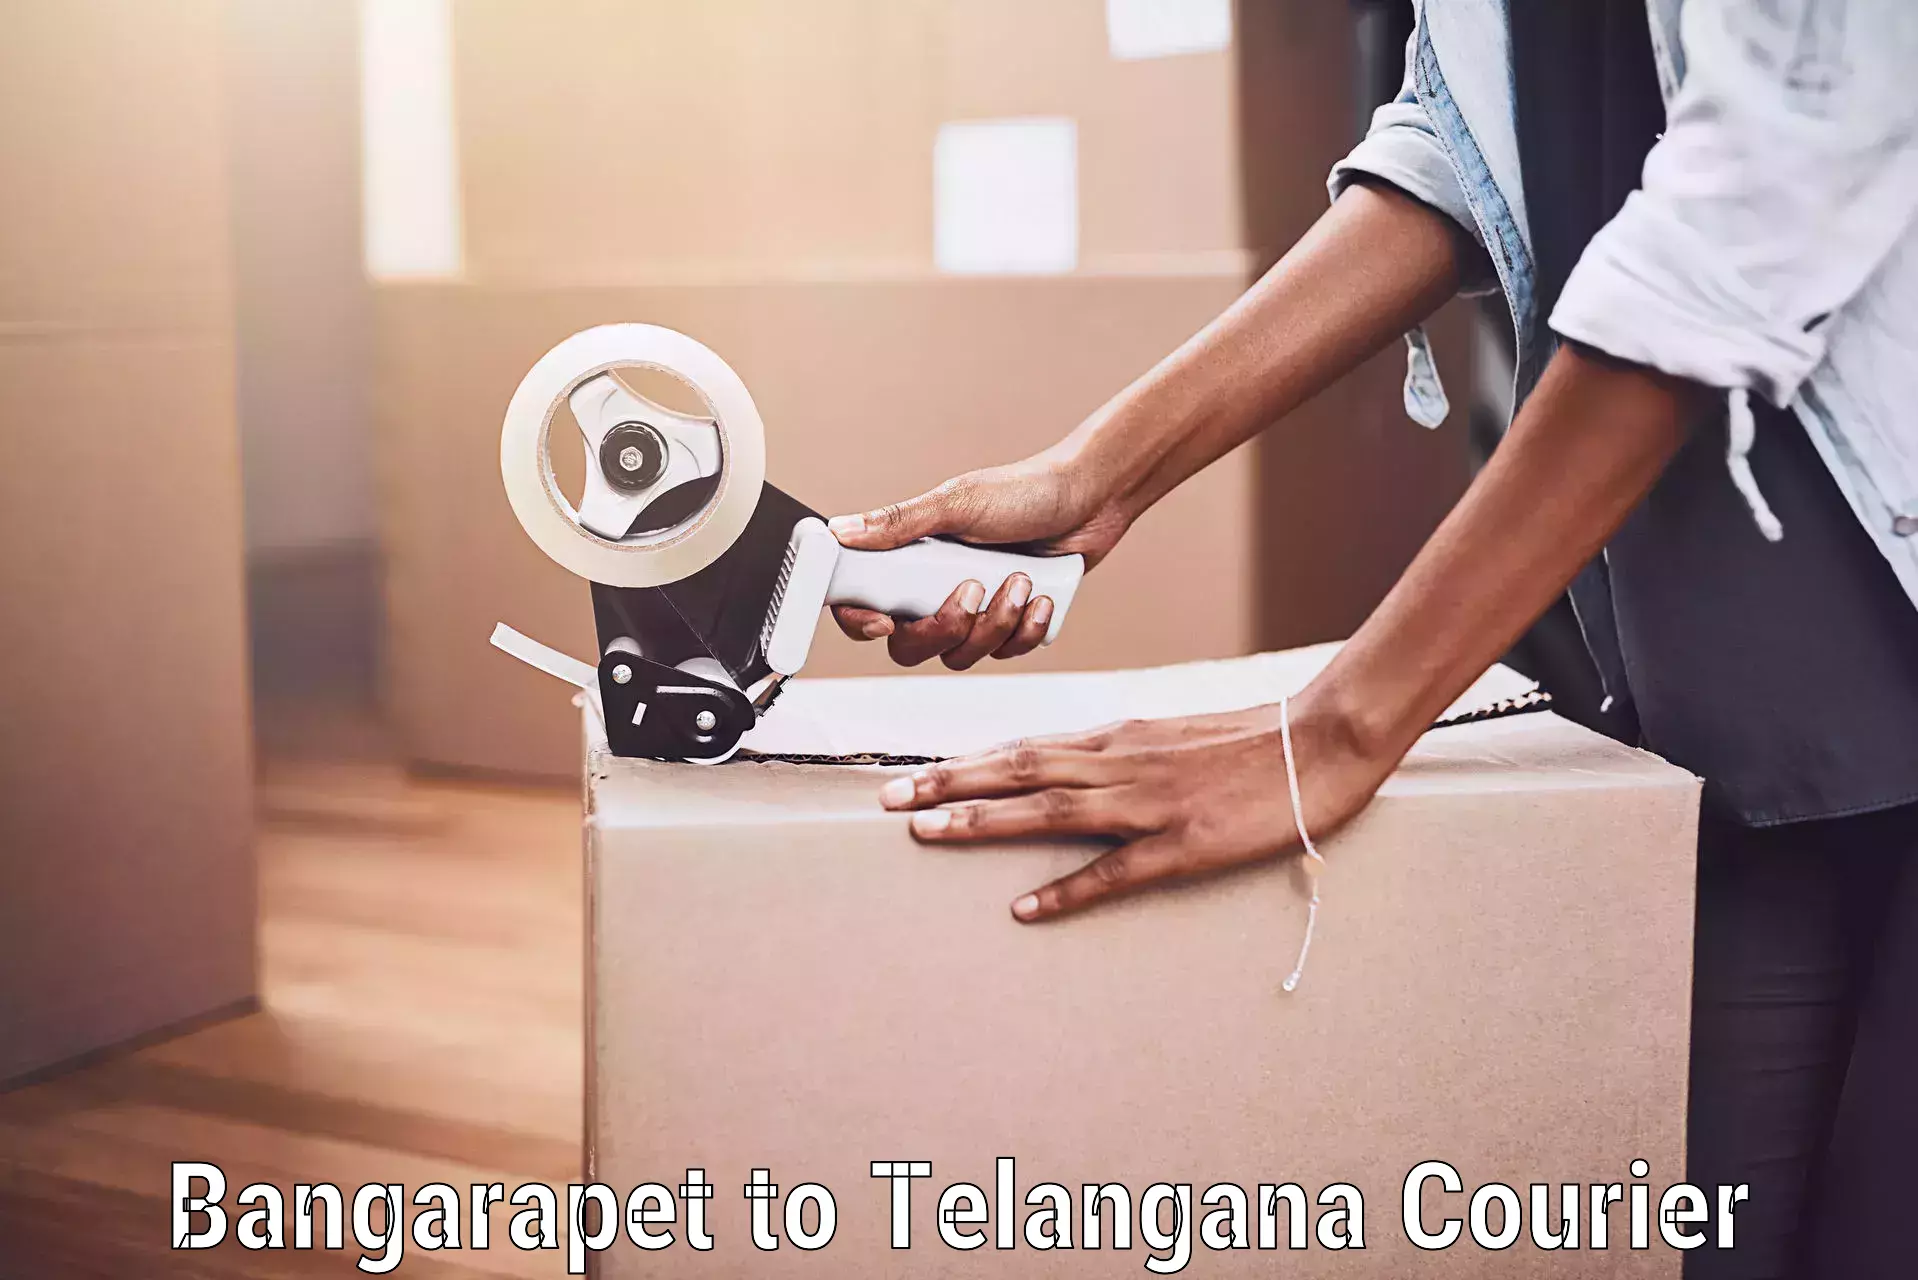 Luggage shipment tracking Bangarapet to Telangana